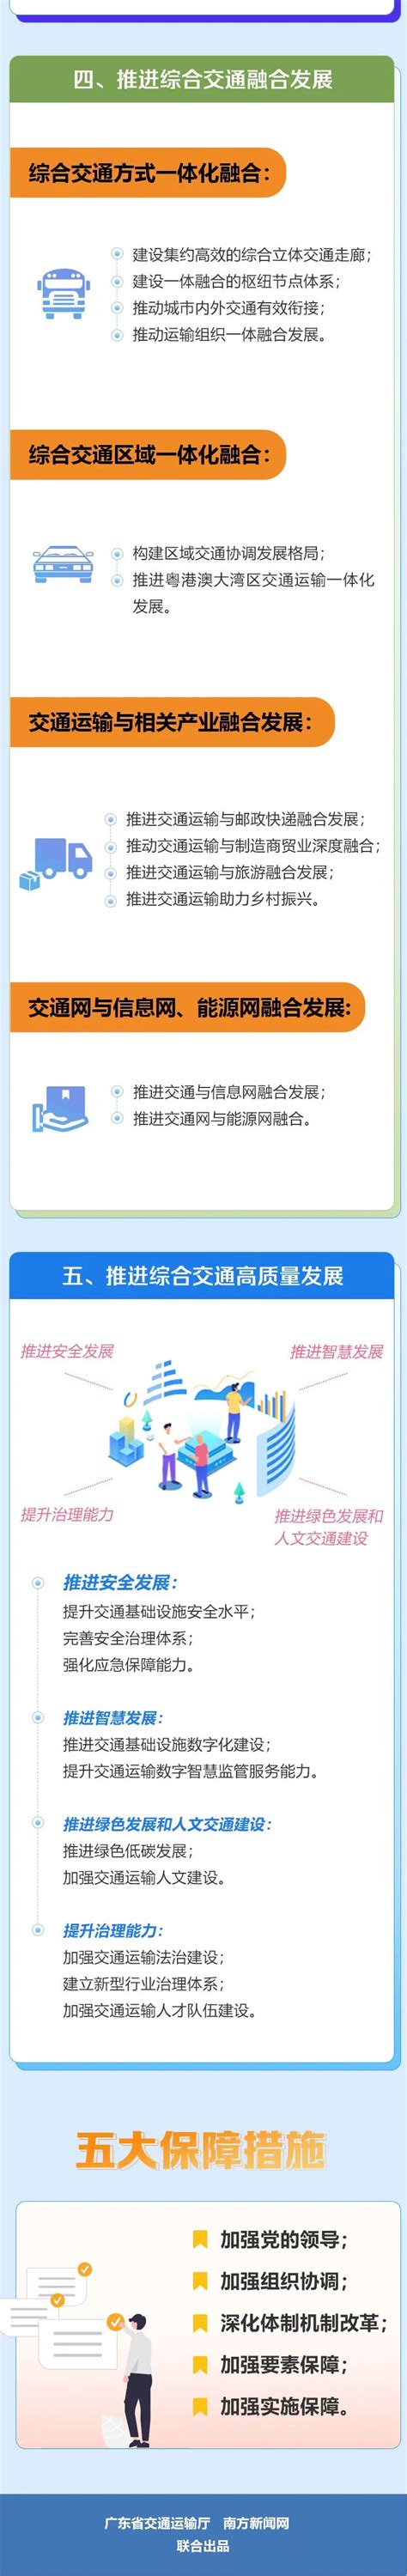 一图读懂《广东省综合立体交通网规划纲要》 - 广东省交通运输厅